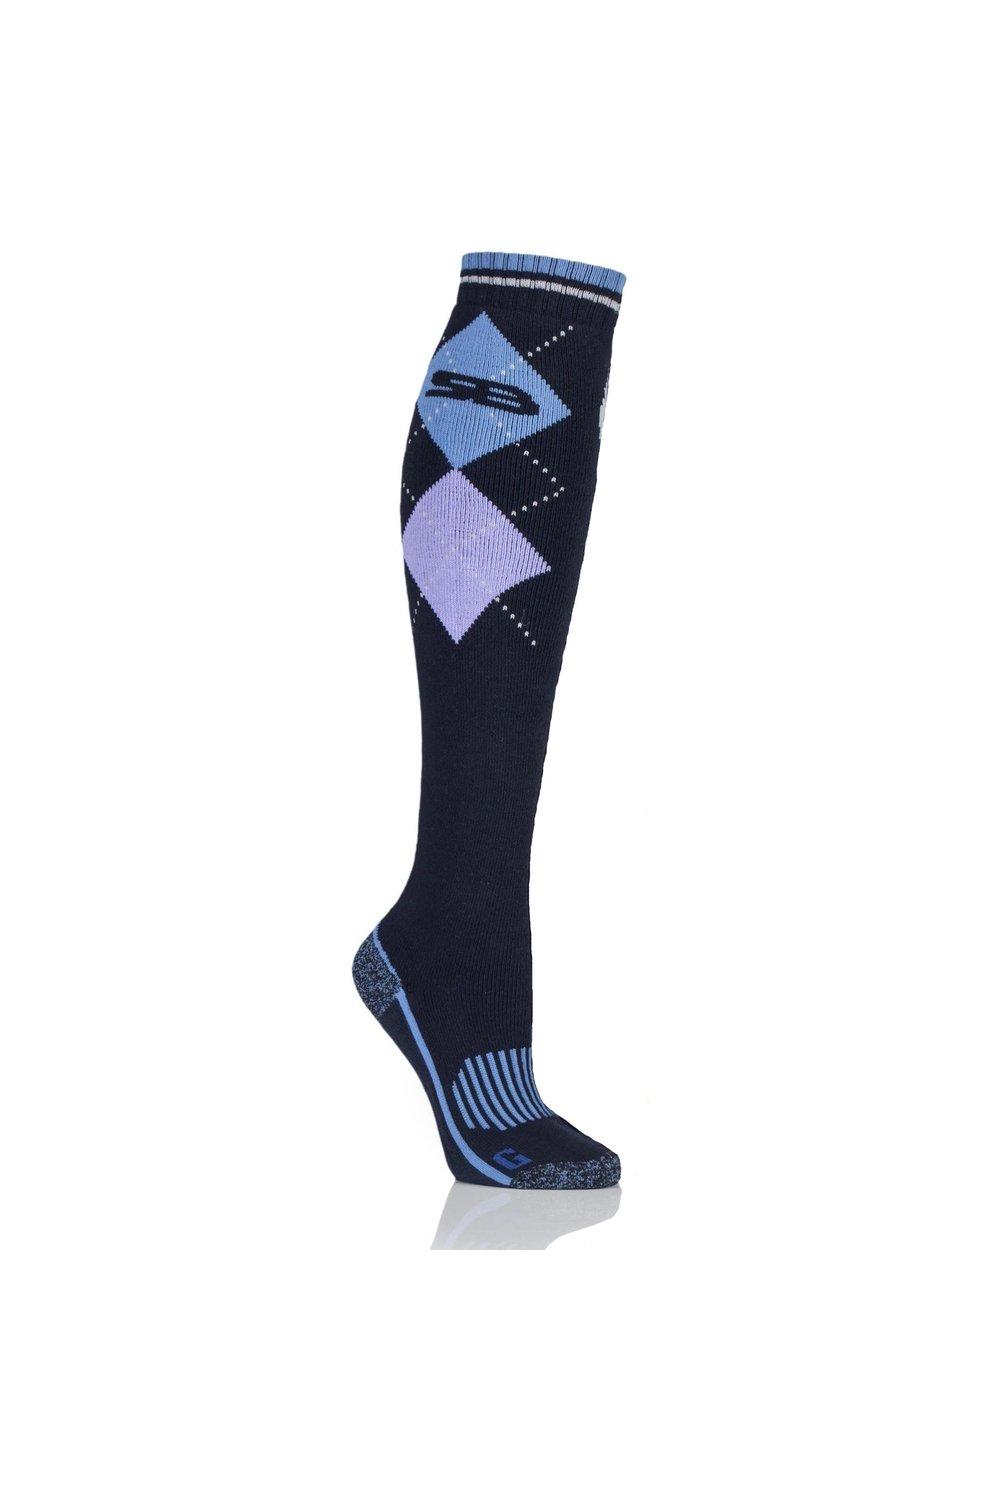 1 пара длинных хлопковых носков BlueGuard для верховой езды SOCKSHOP Storm Bloc, синий